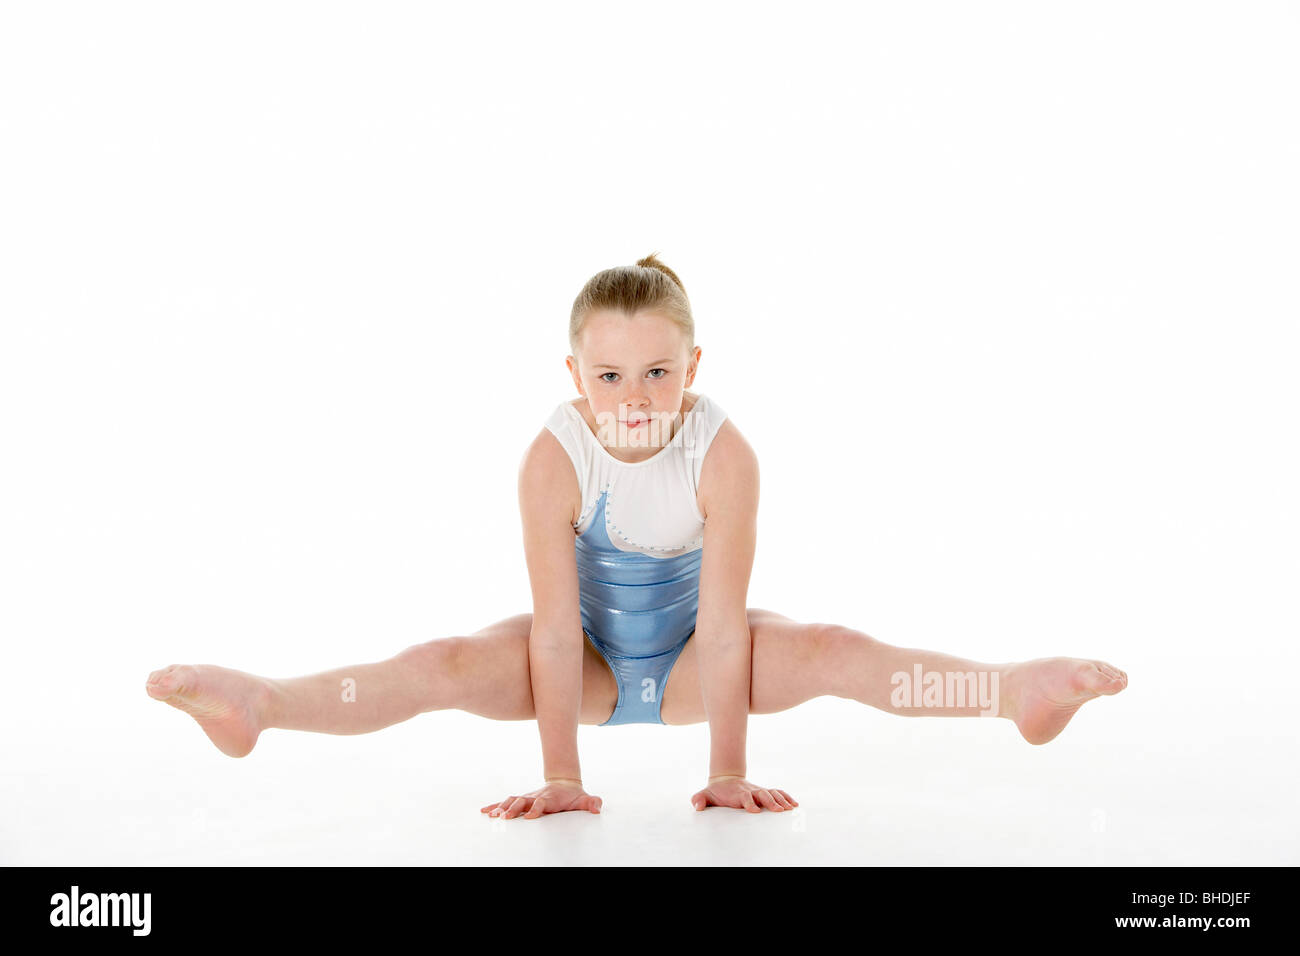 Retrato de estudio de joven gimnasta femenino Foto de stock